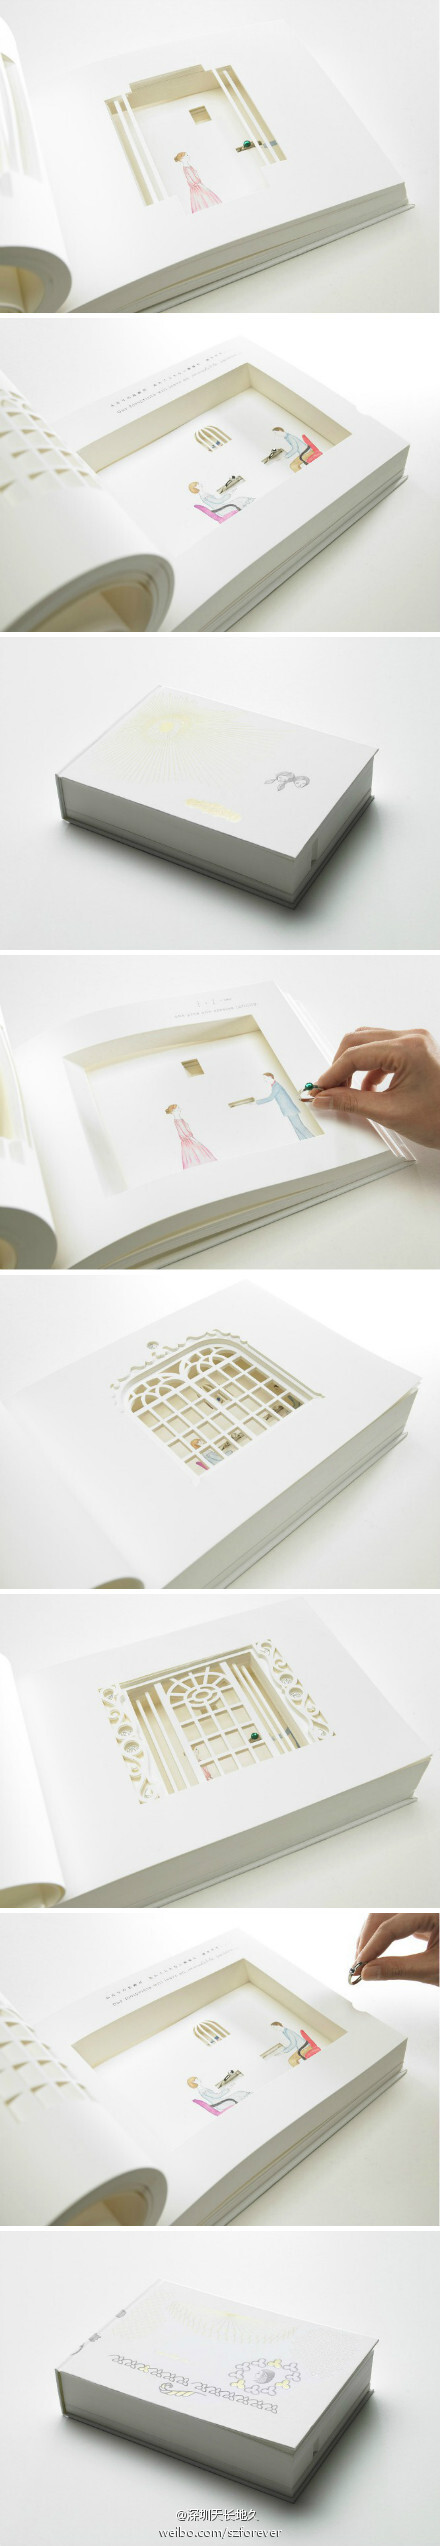 #求婚#出自日本设计师渡边良重（Watanabe Yoshie）的绘本设计，以镂空雕刻的工艺辅以精致彩绘，在一本看似平淡无奇的书本里营造出立体的空间，真实的戒指与虚拟的场景巧妙融合，如此浪漫，无怪乎被人称作“求婚书”。